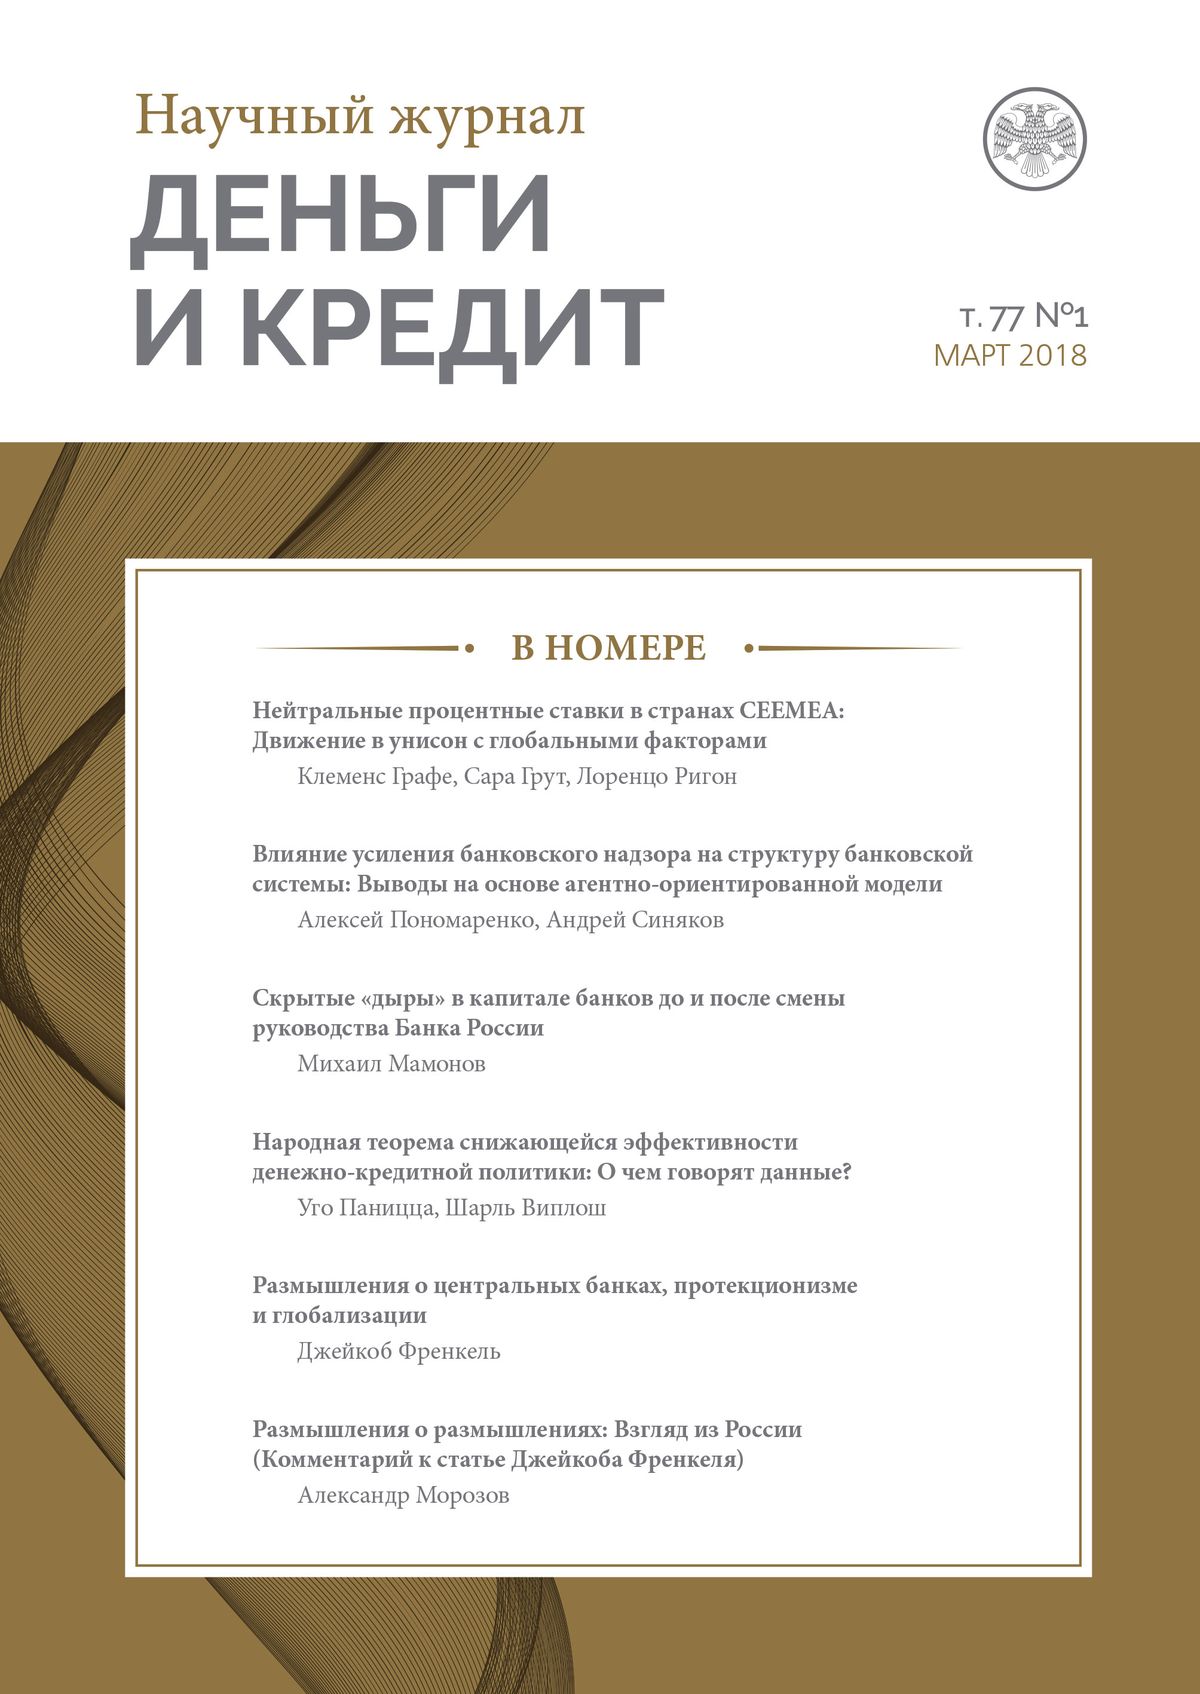 Вышел первый номер обновленного научного журнала Банка России «Деньги и кредит»